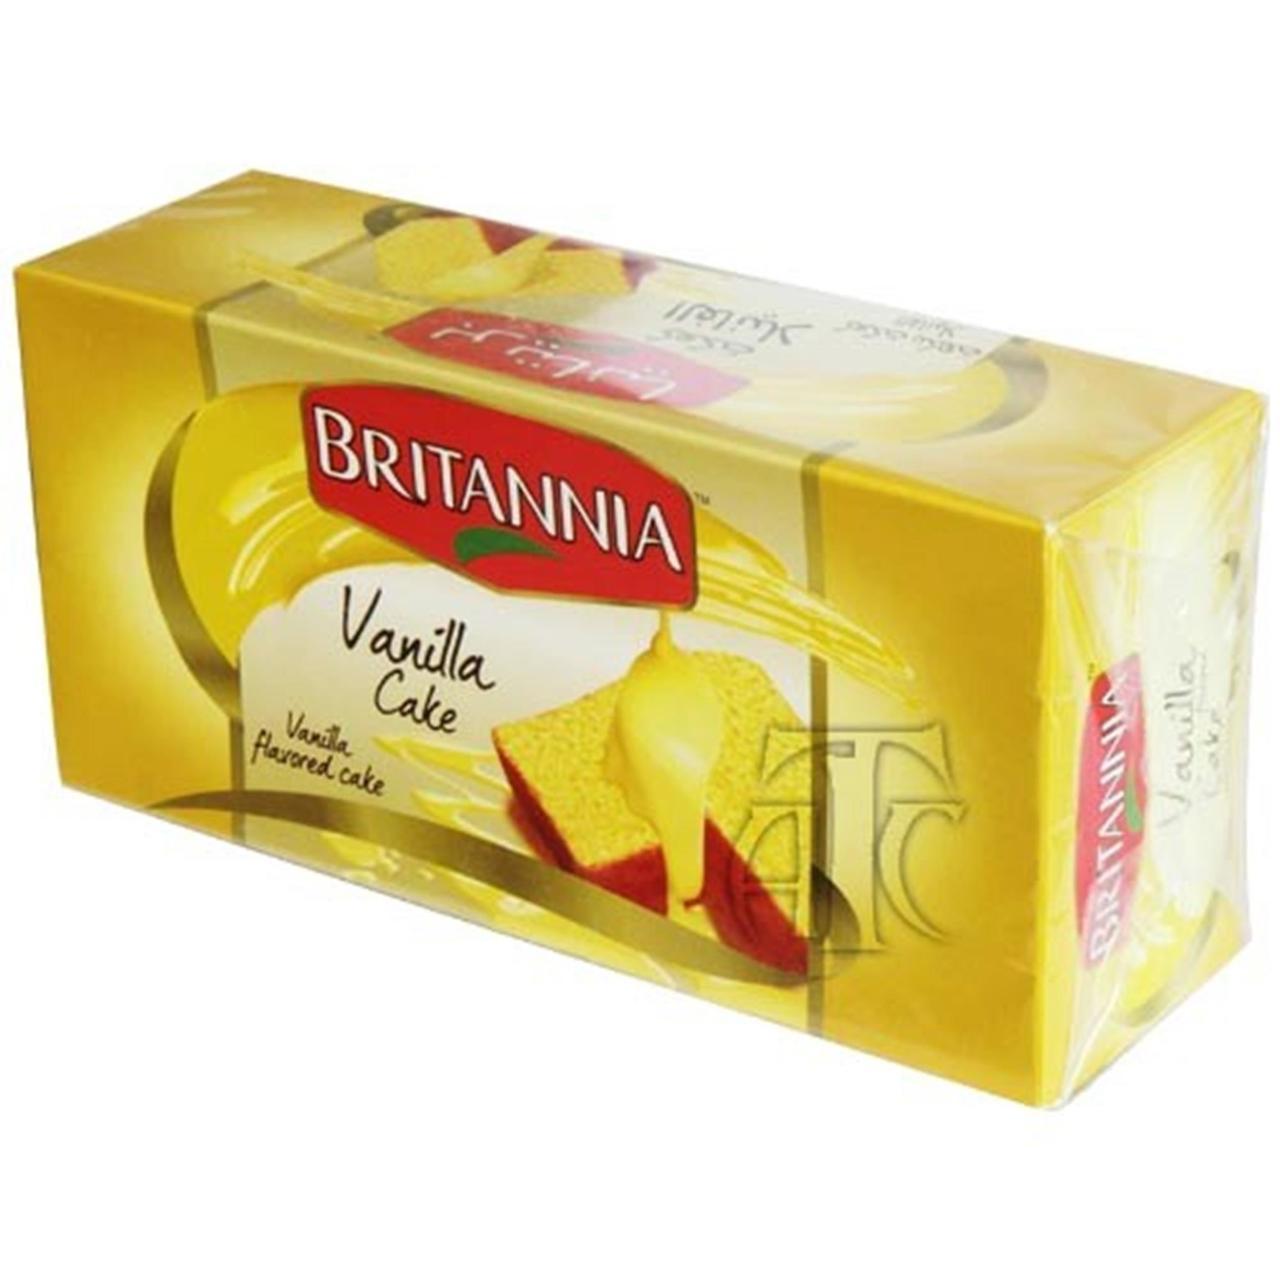 Britannia fruit cake 🍰#shorts #viralshorts #trendingshorts #subscribe -  YouTube